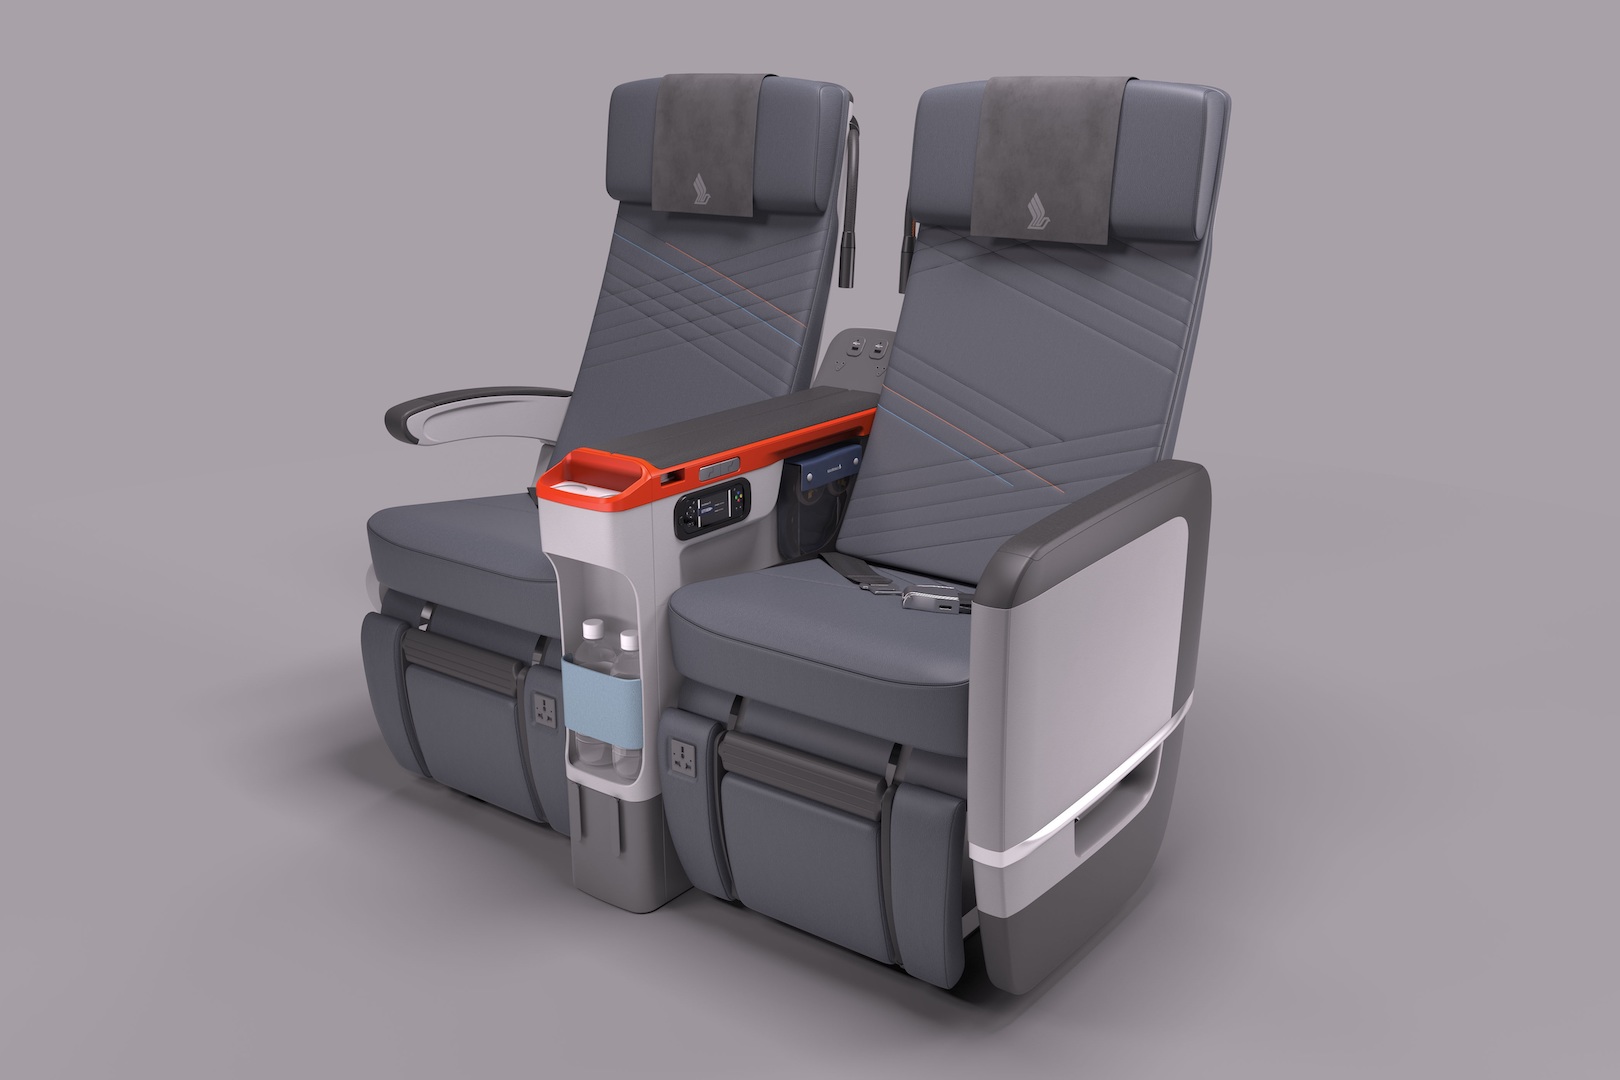 Singapore Airlines premium economy seating arrangement